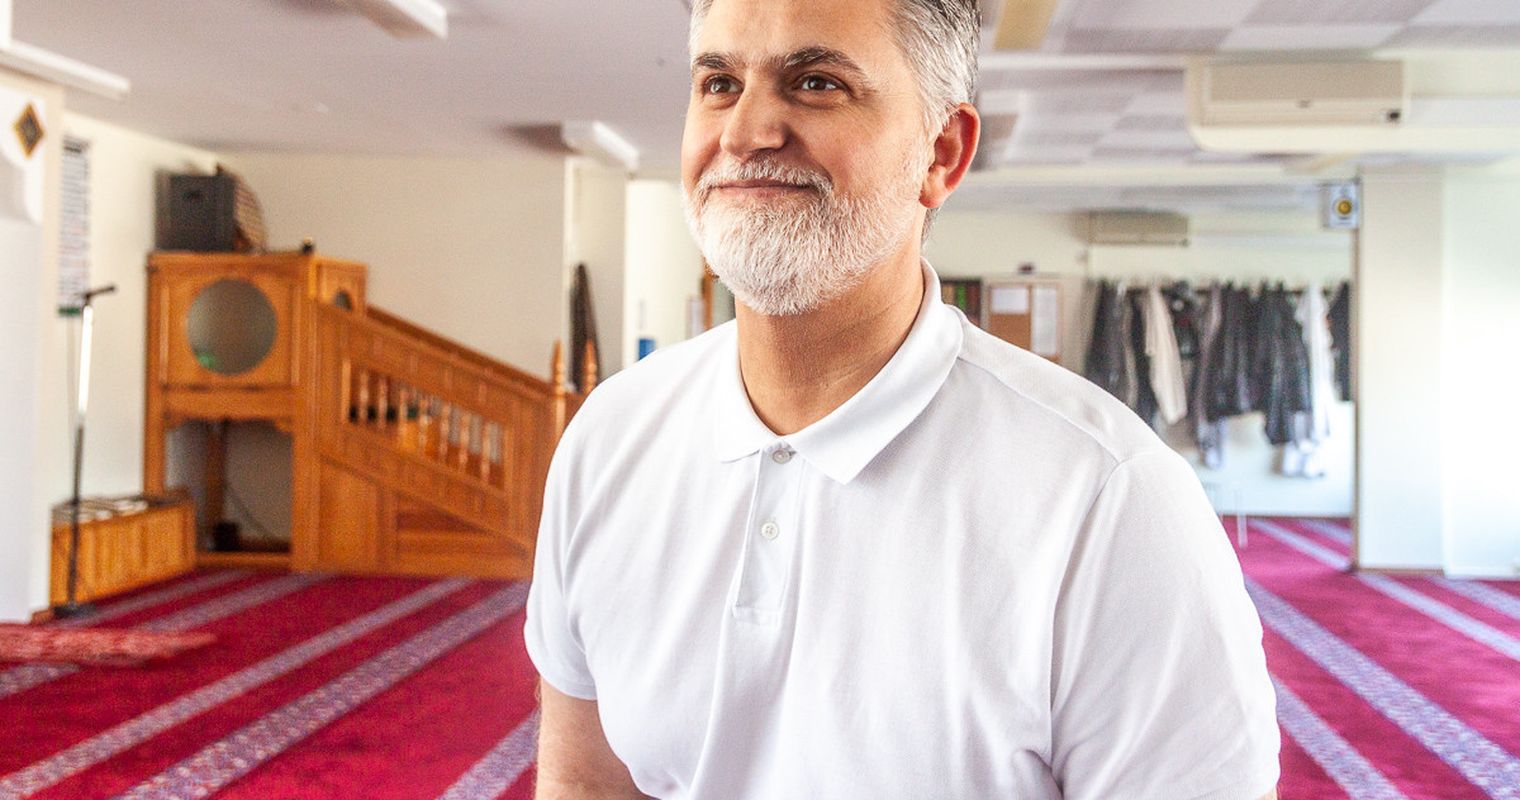 «Potenzielle Terroristen werden nicht in der Moschee rekrutiert»